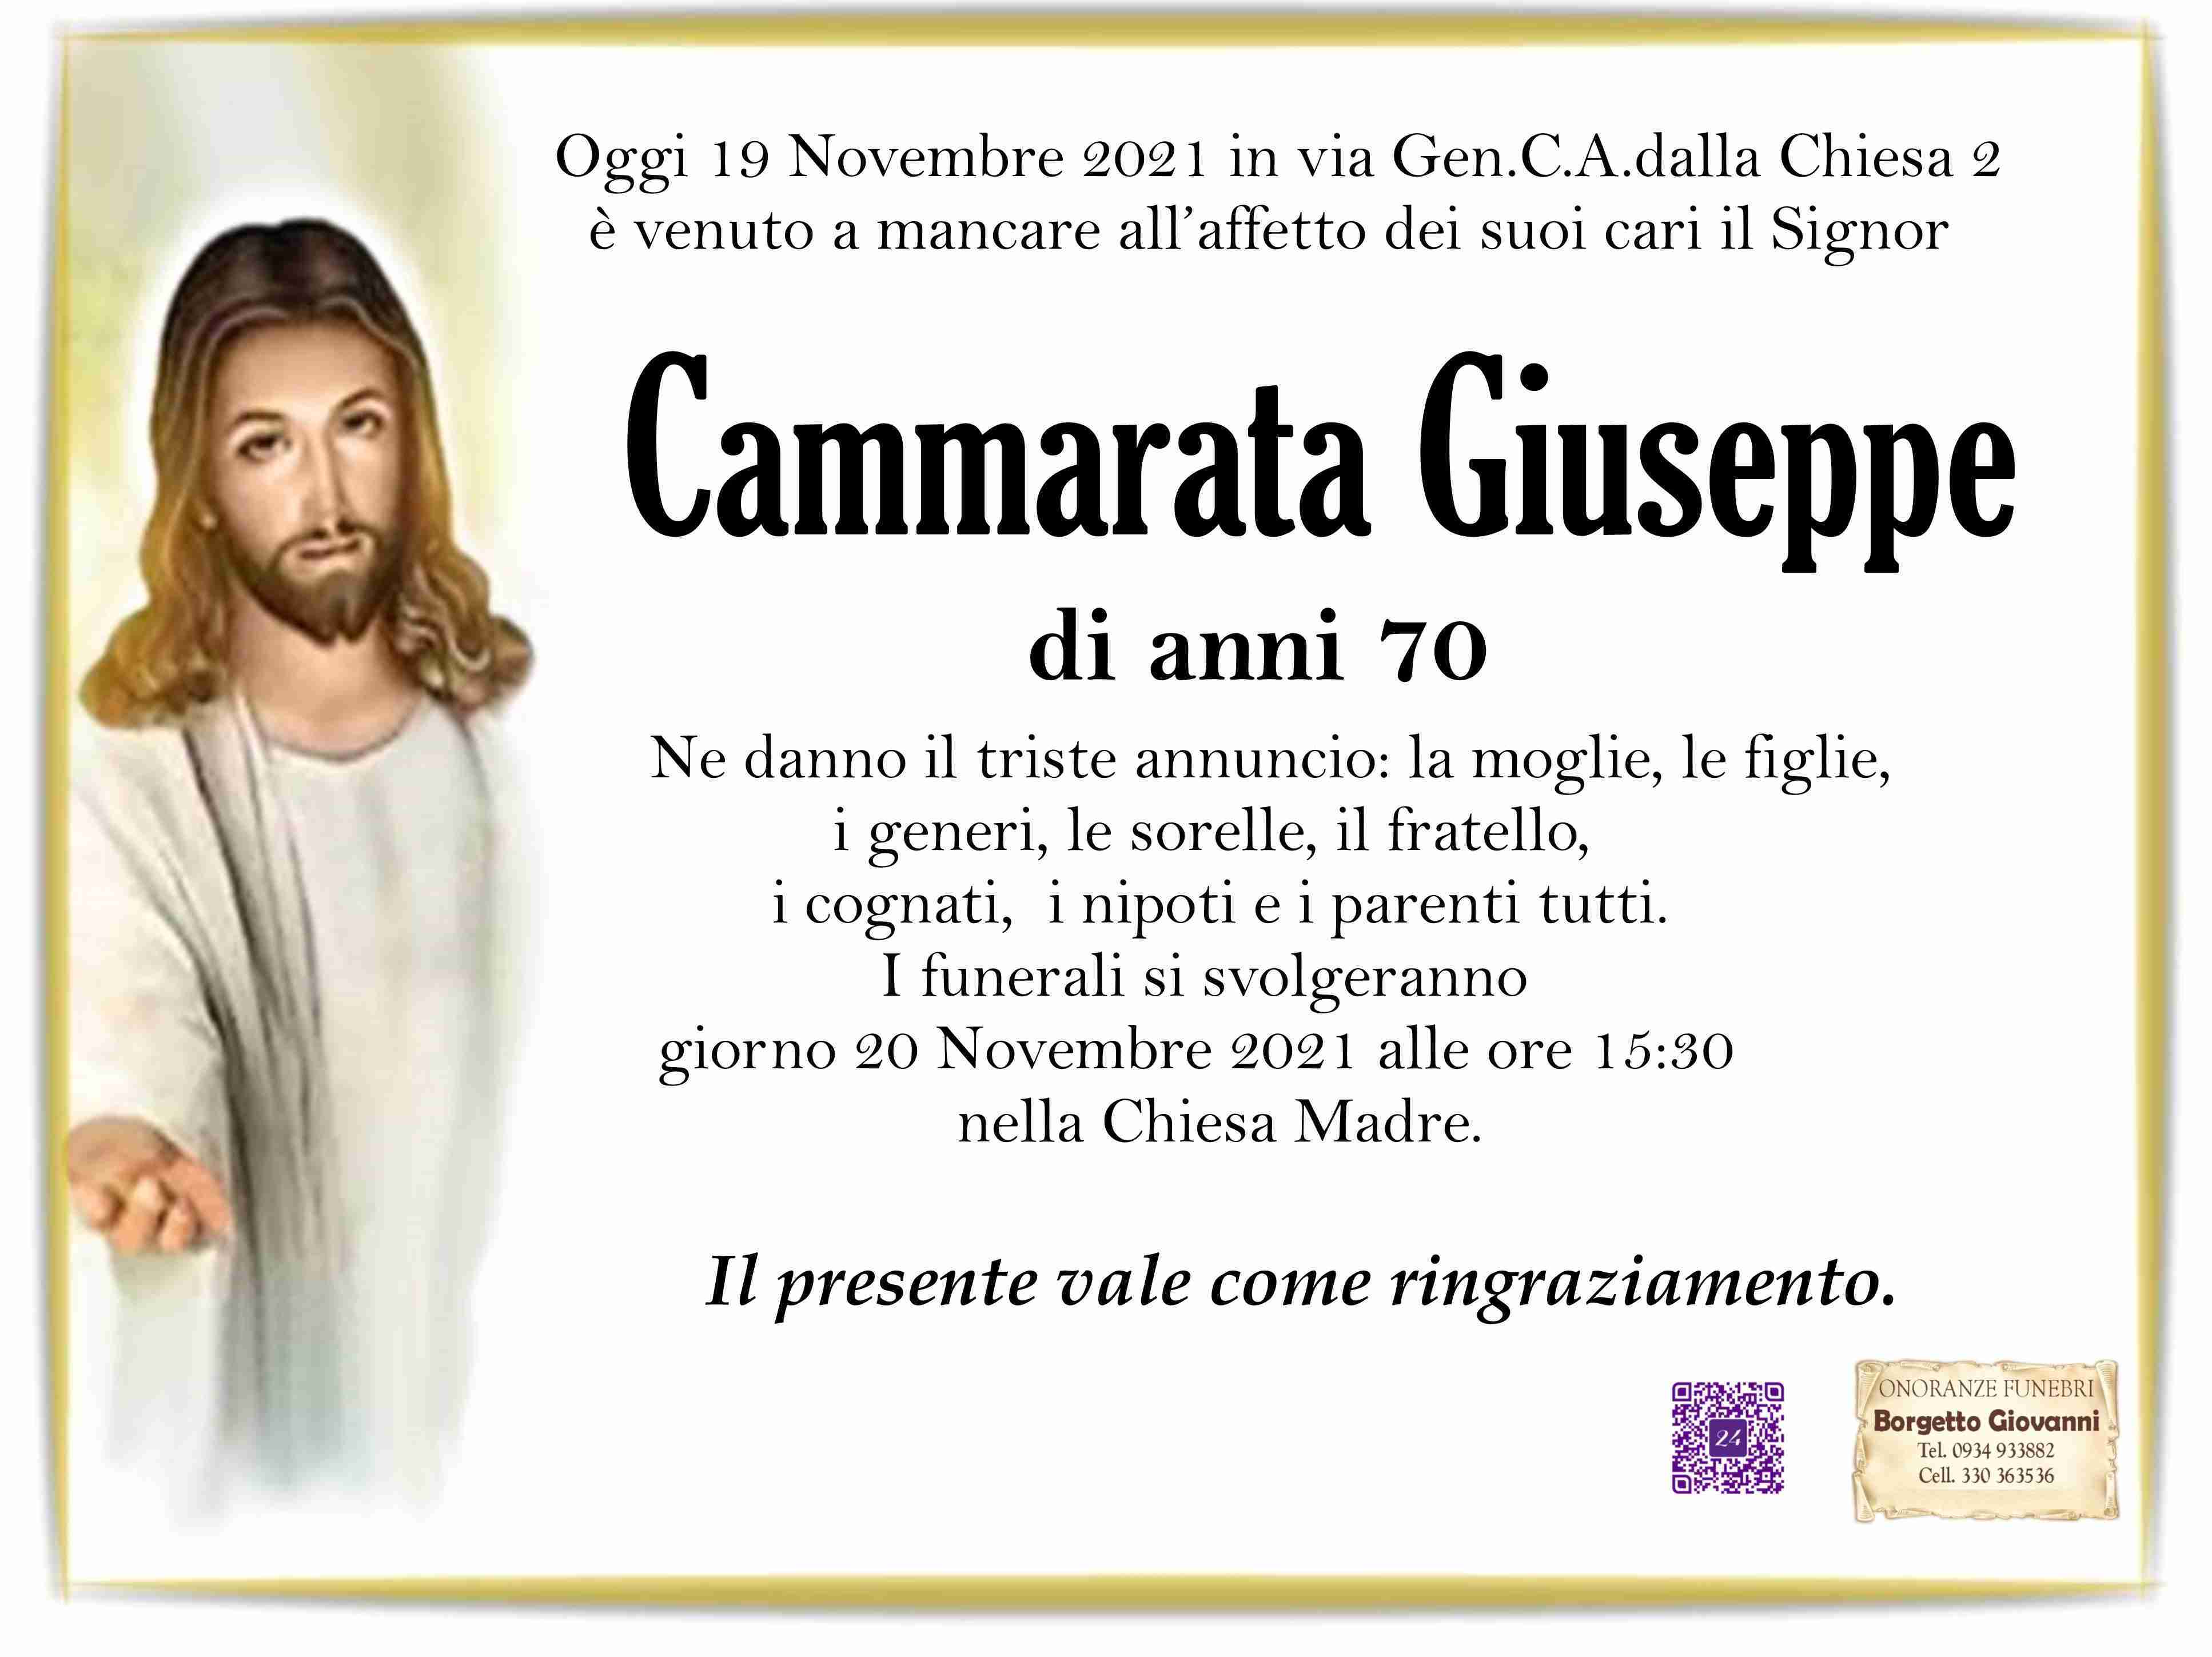 Giuseppe Cammarata